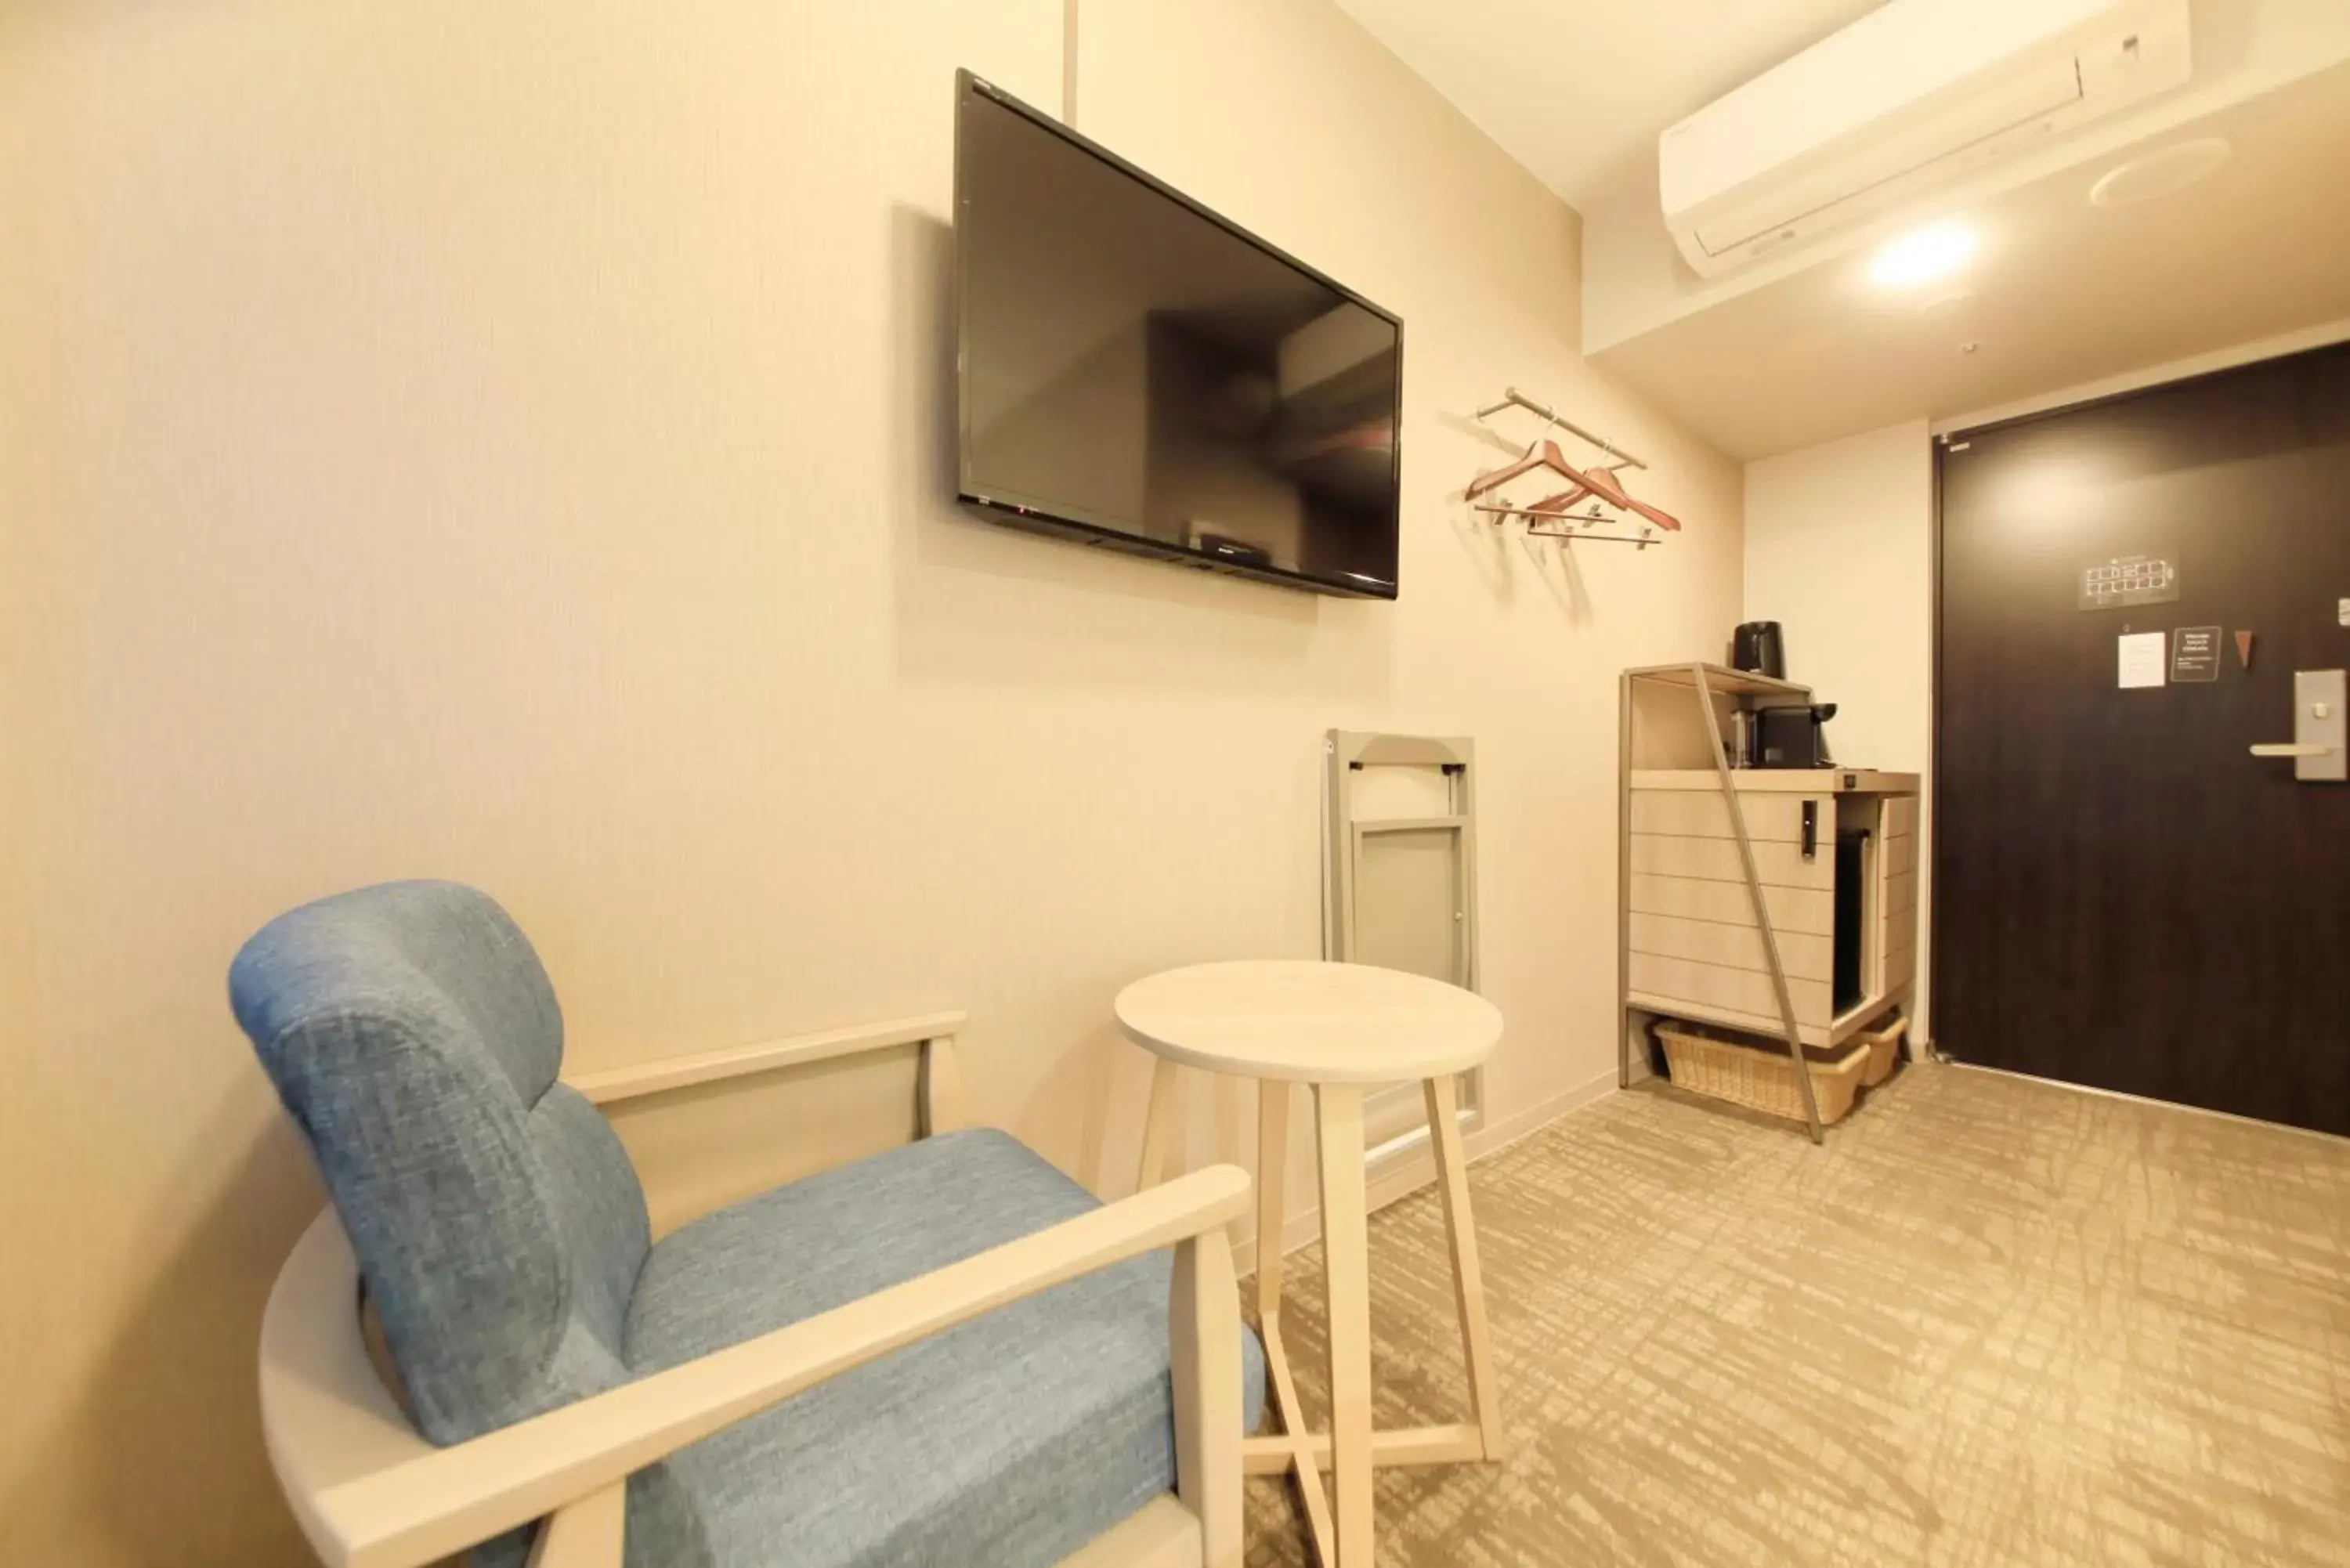 Bedroom, TV/Entertainment Center in S-peria Inn Osaka Hommachi